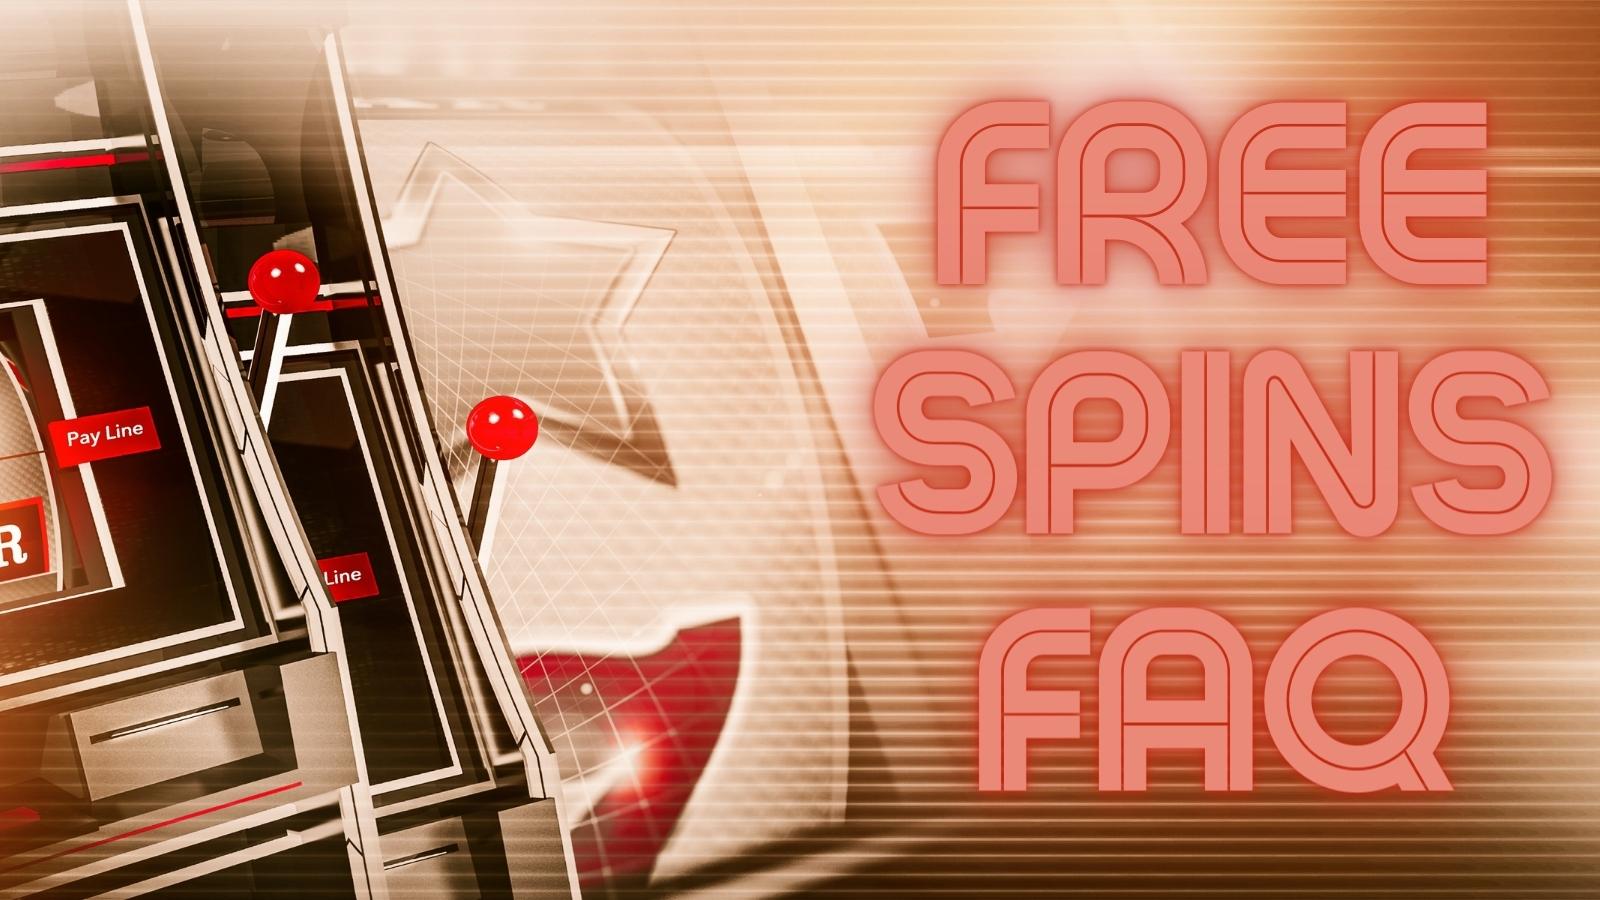 Free Spins FAQ